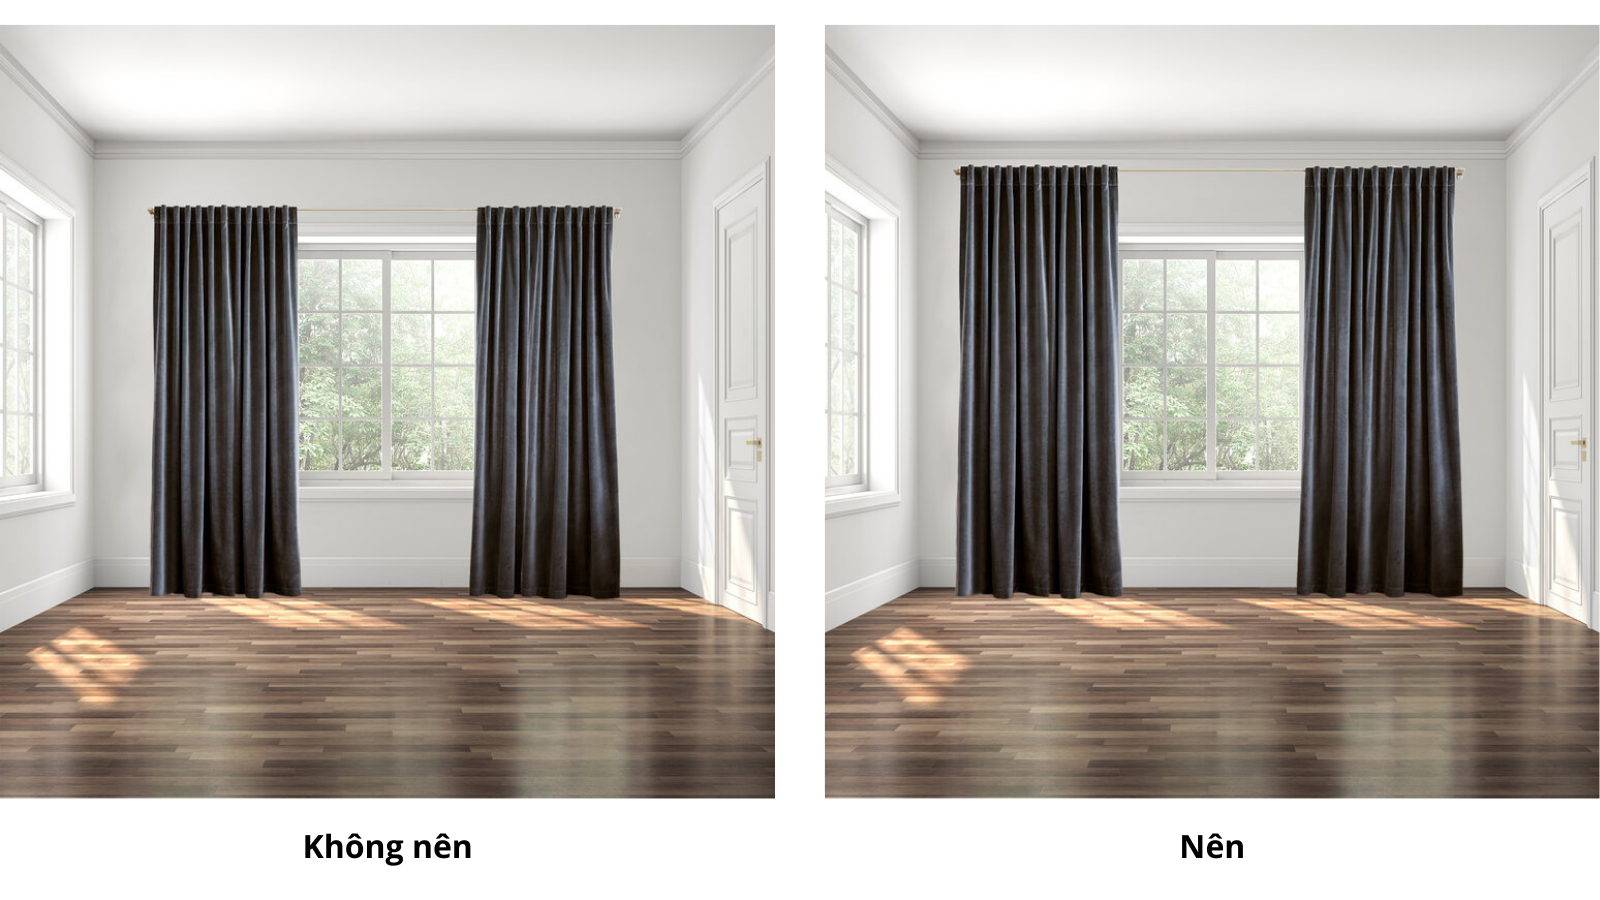 Thanh treo rèm cách xa phần khung cửa sổ sẽ giúp tăng độ cao của trần nhà.